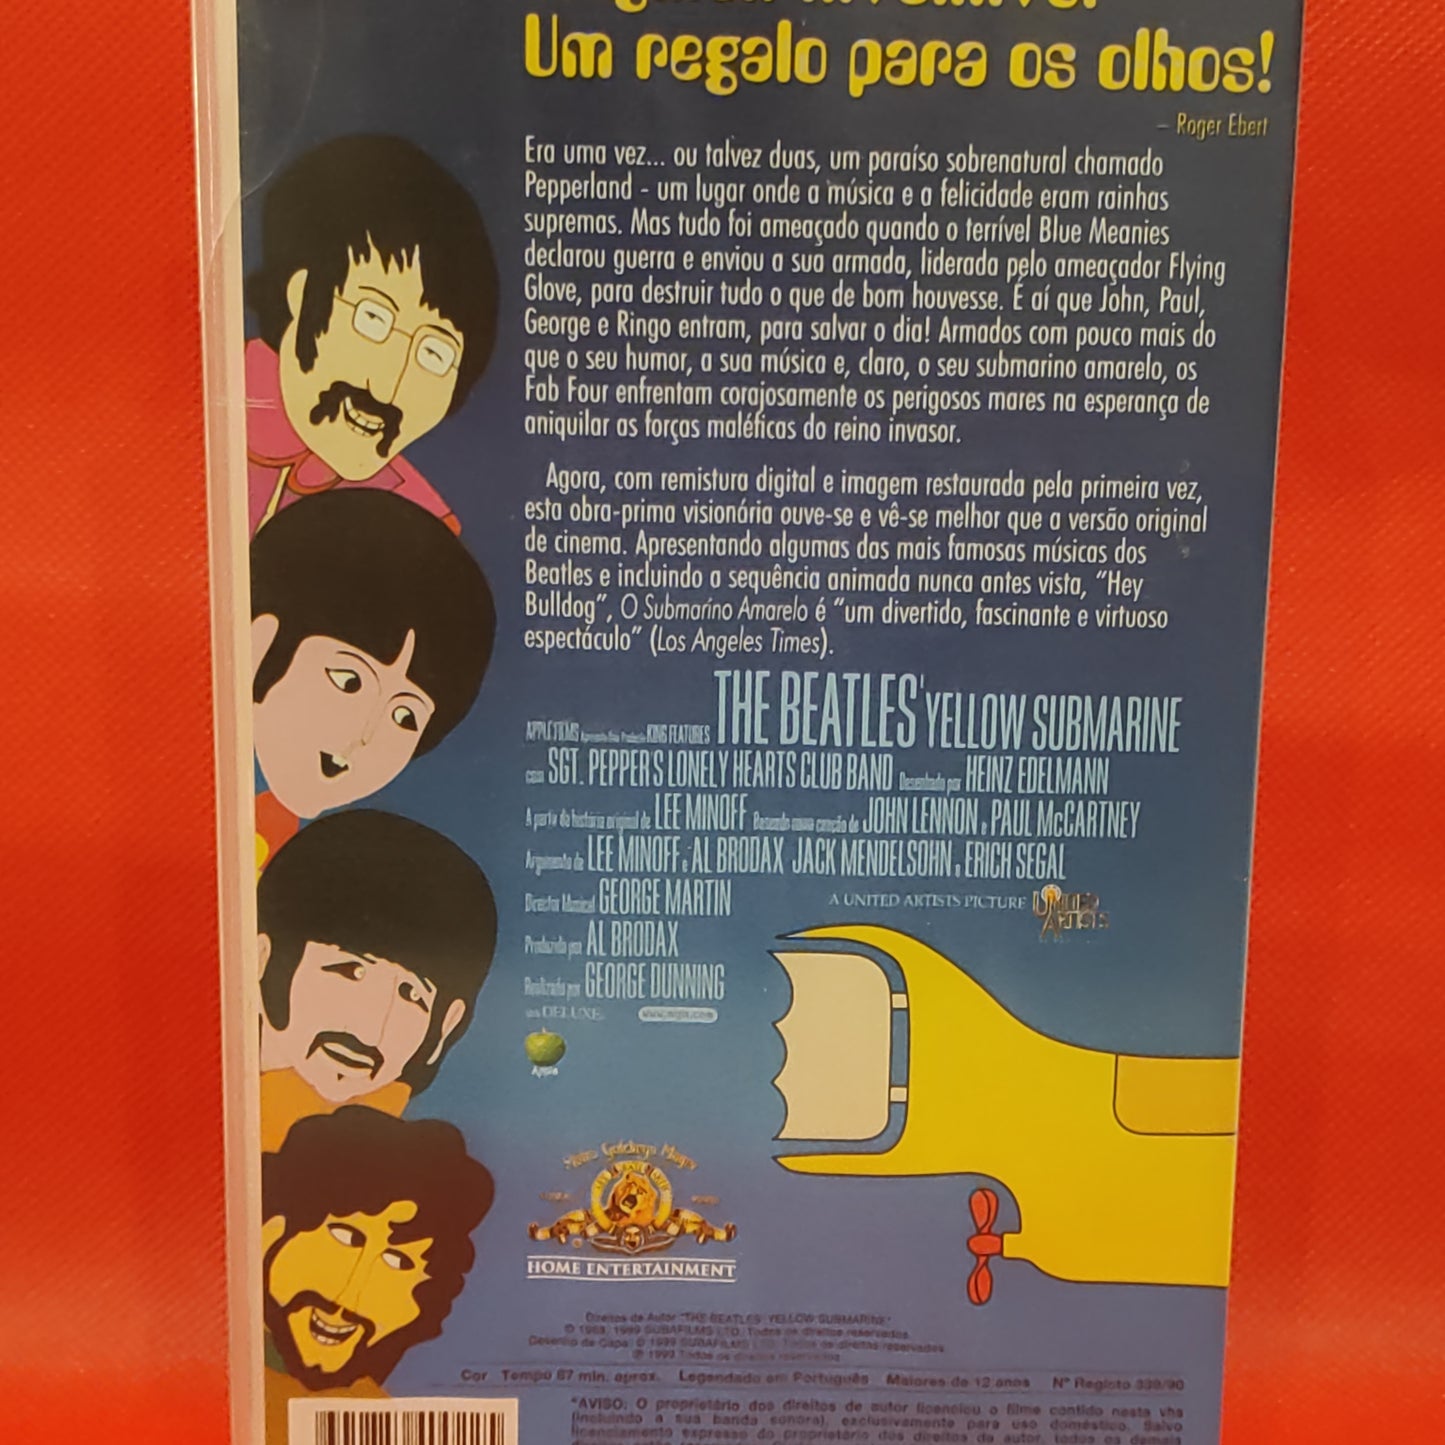 The Beatles - O Submarino Amarelo